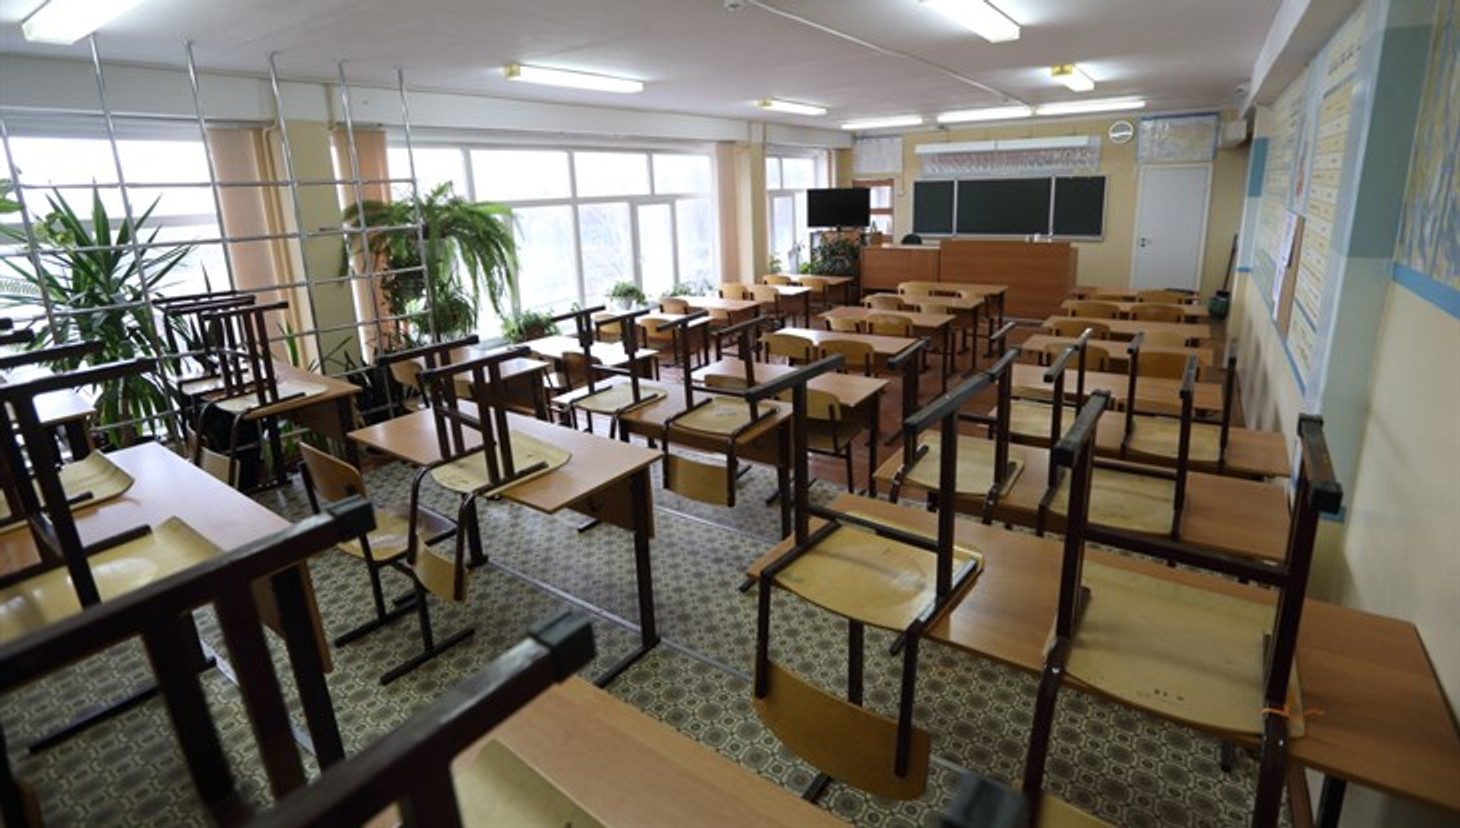 У Казані евакуювали 15 шкіл через повідомлення про мінування. Учнів гімназії, де сталася стрілянина, взяли під посилену охорону